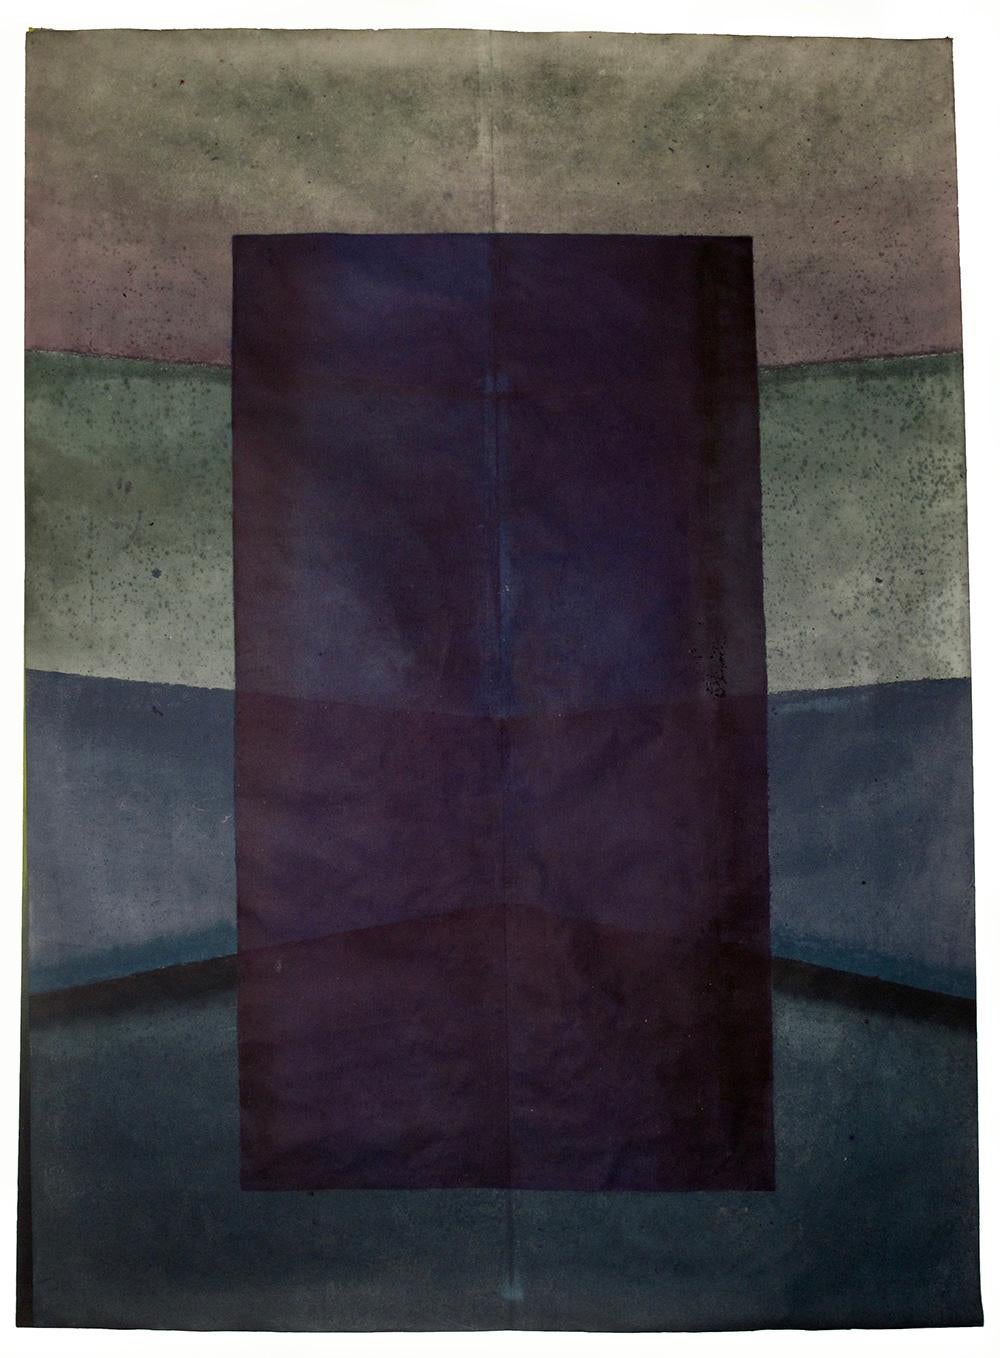 Abstract Painting Elvire Ferle - Untitled XLIII par Ferle - Peinture abstraite de grande taille, tons sombres